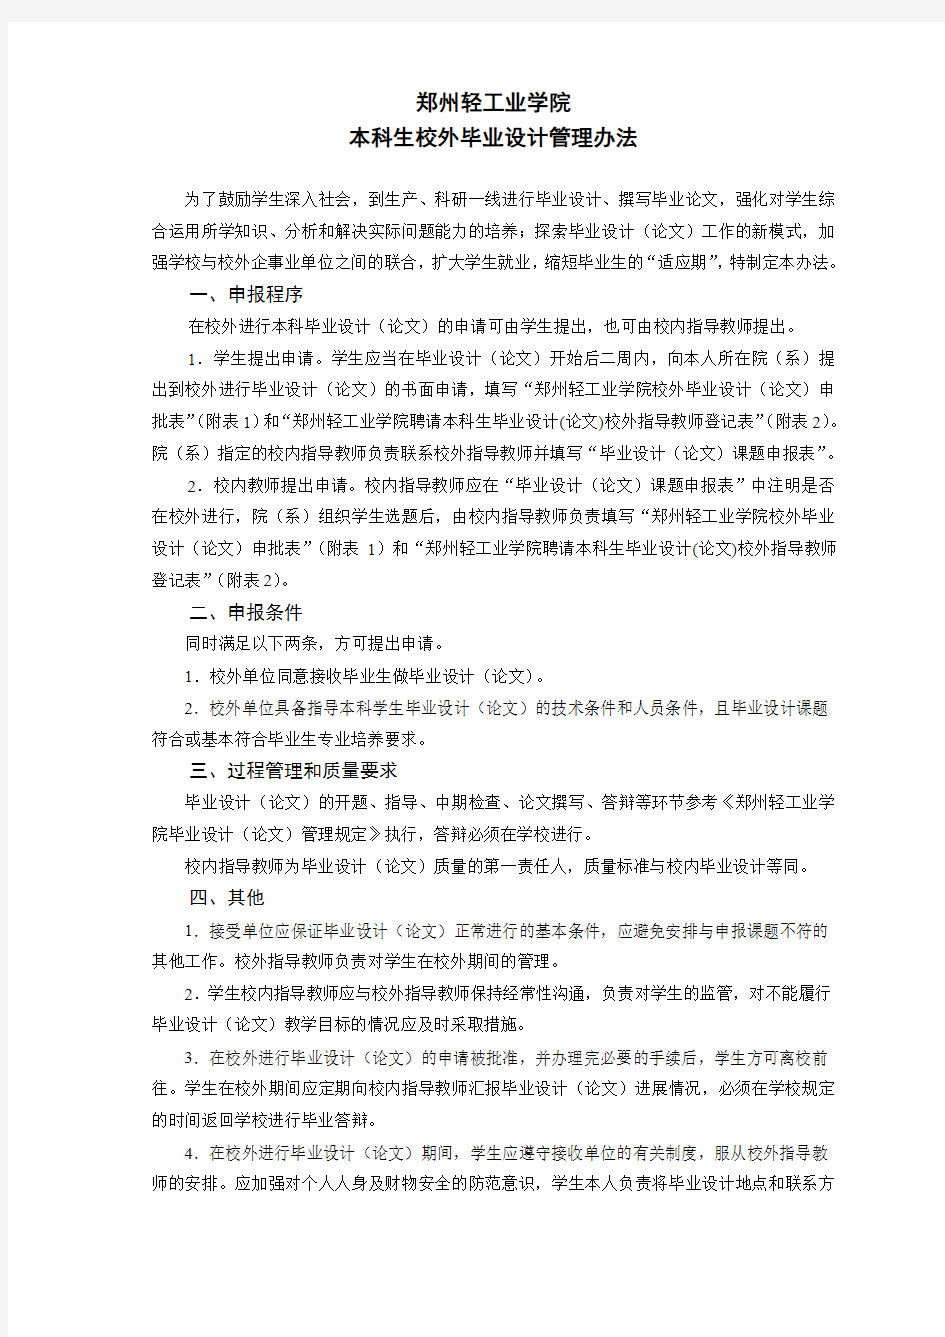 郑州轻工业学院关于本科生校外毕业设计管理办法